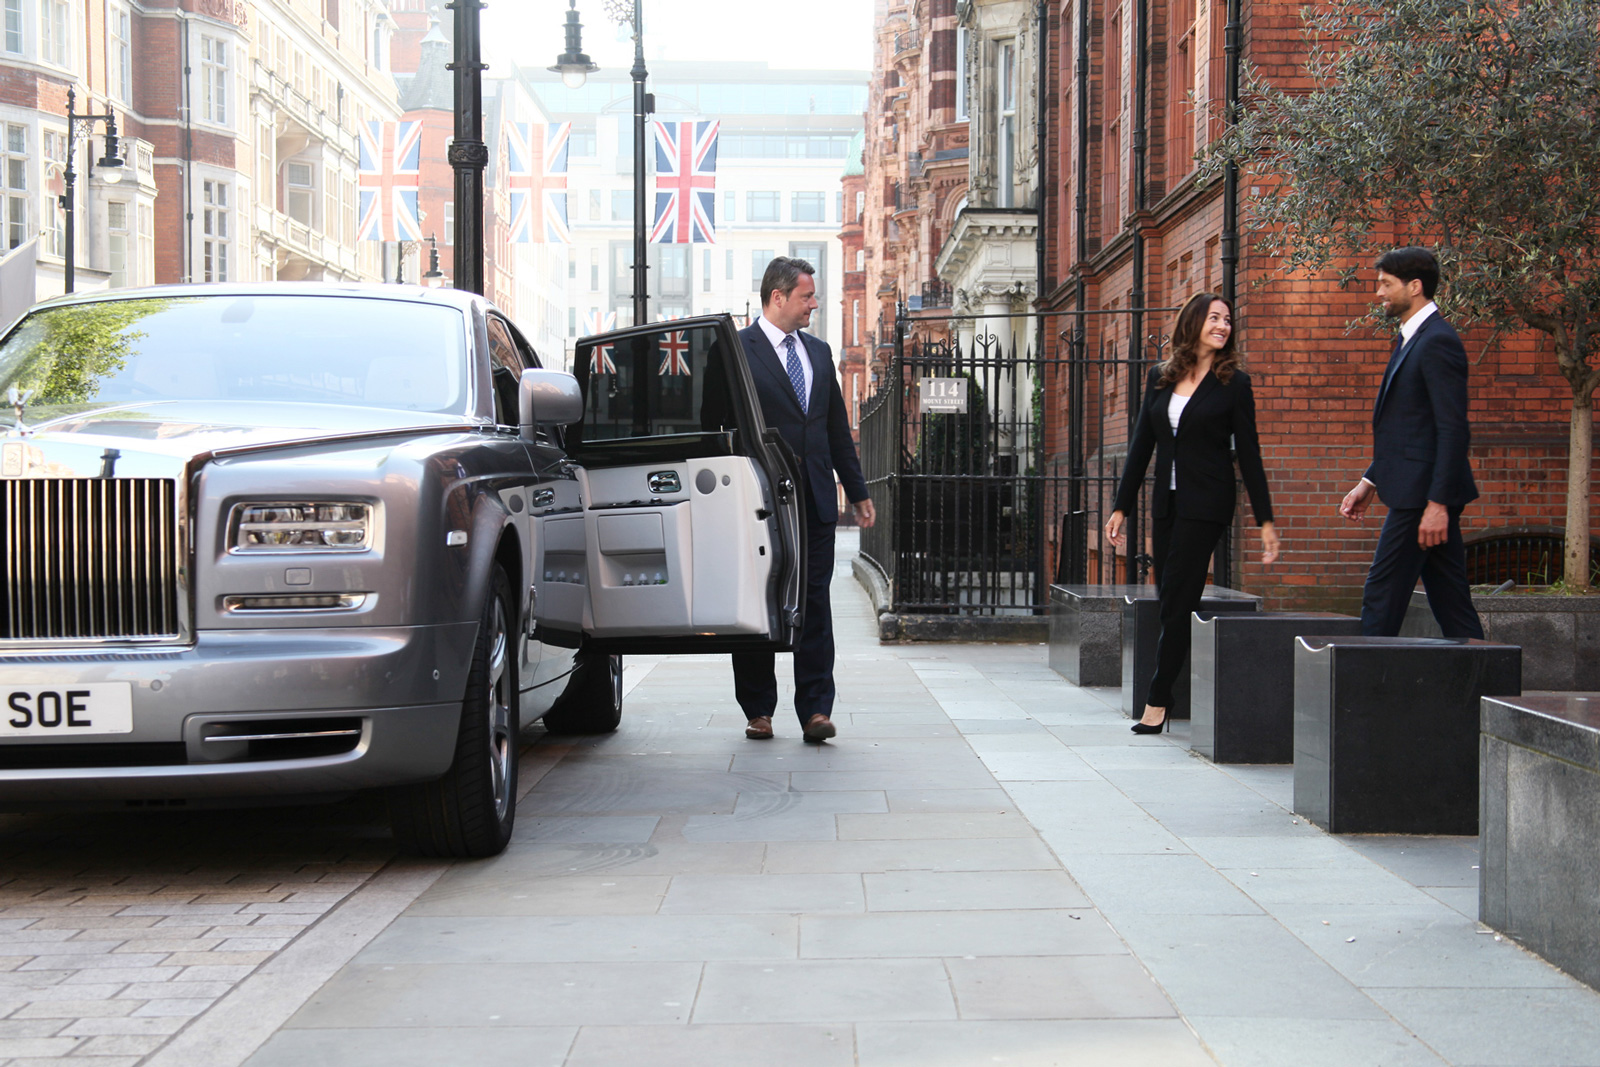 Chauffeur holds door open of Rolls-Royce Phantom as couple approach in London street